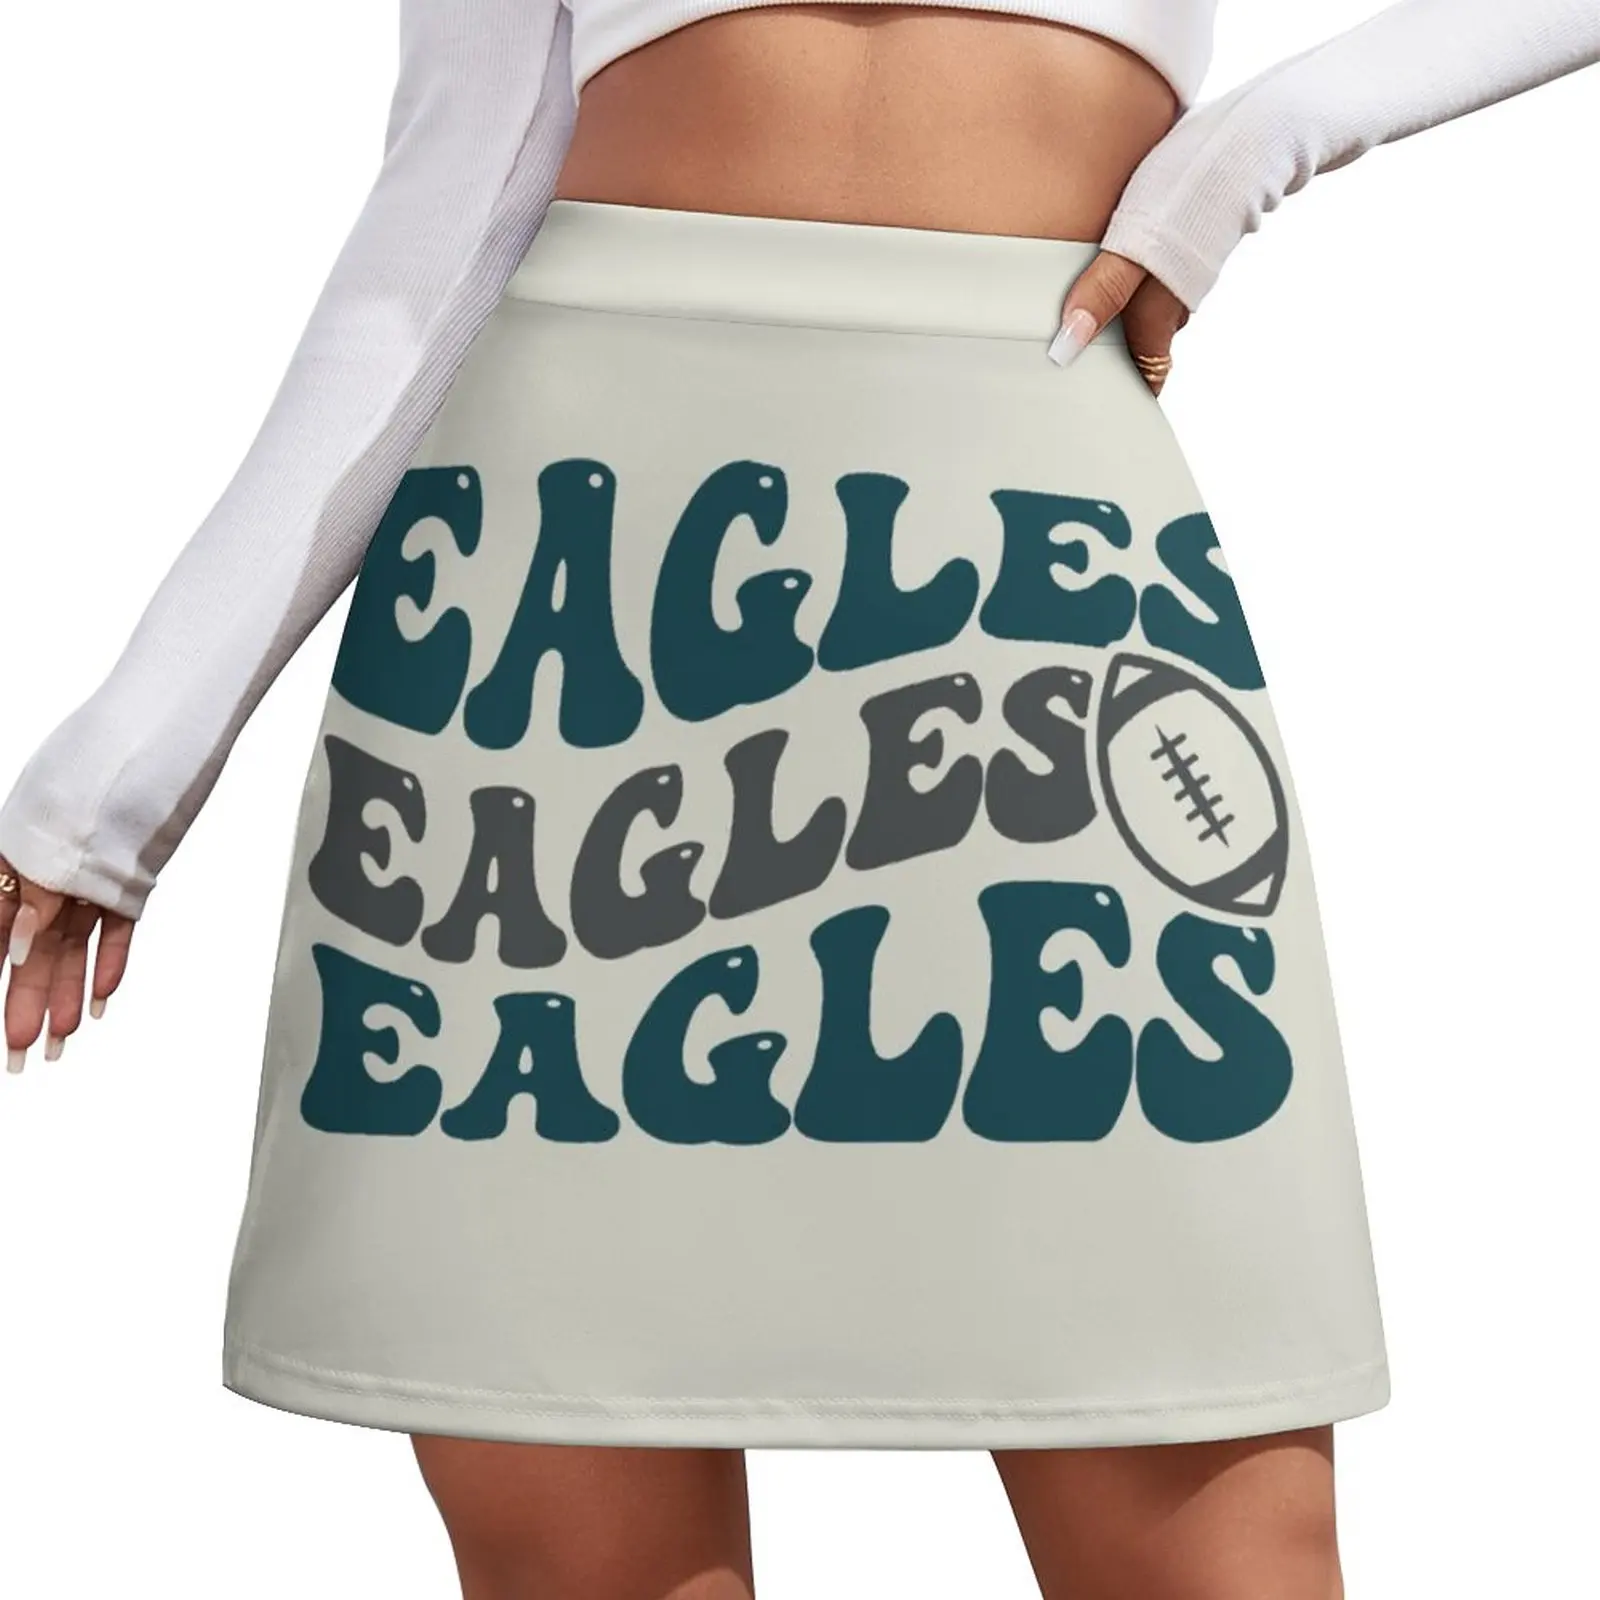 Eagles Football Mini Skirt Korean skirts dress mini skirt for women mini football table 69x37x62 cm maple